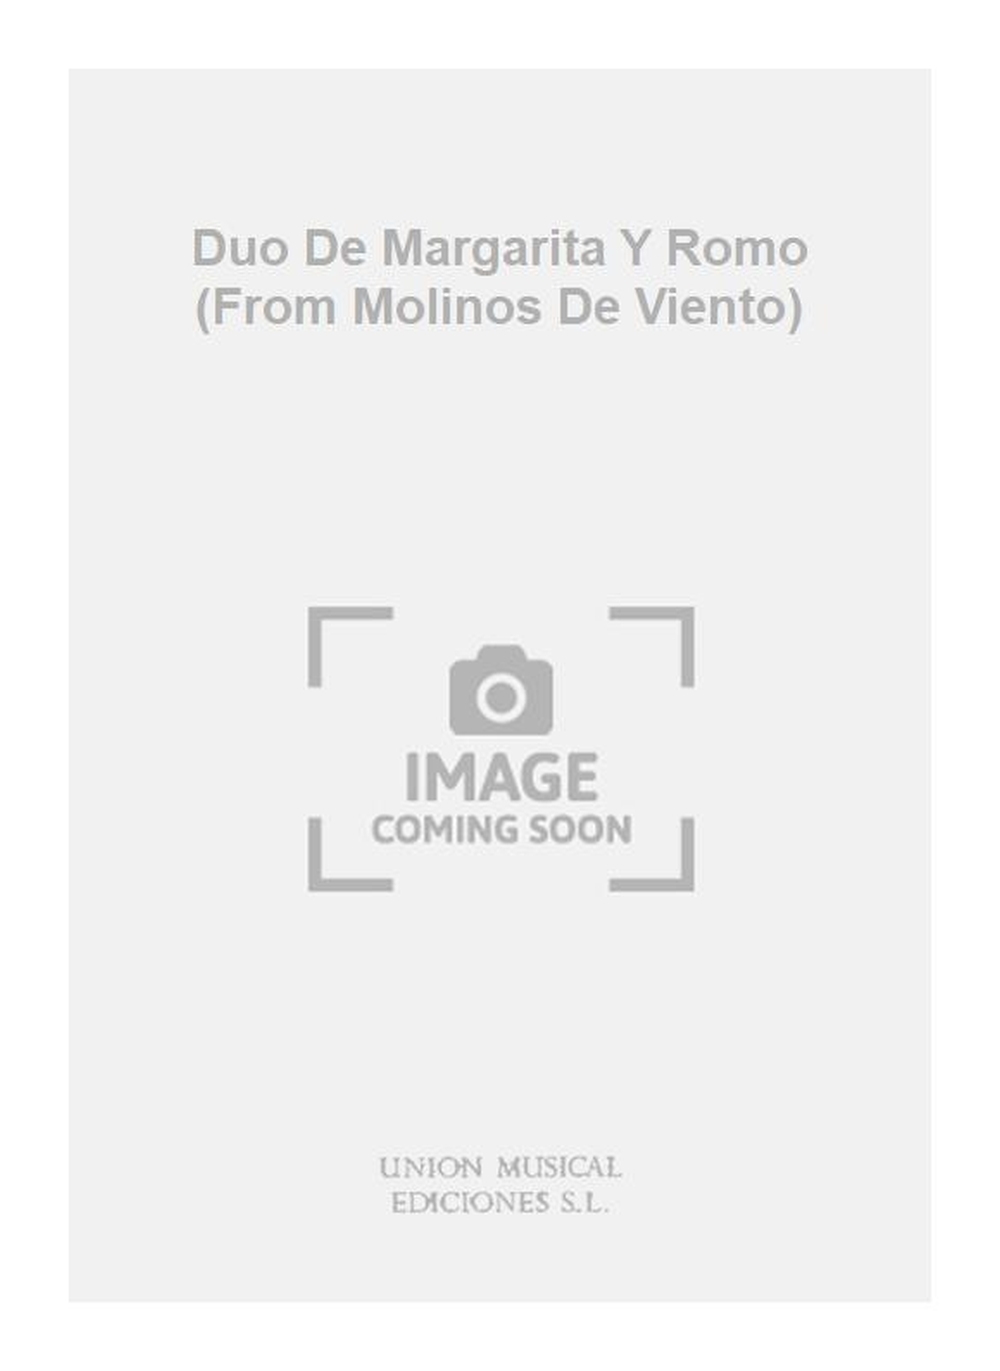 Pablo Luna: Duo De Margarita Y Romo (From Molinos De Viento)